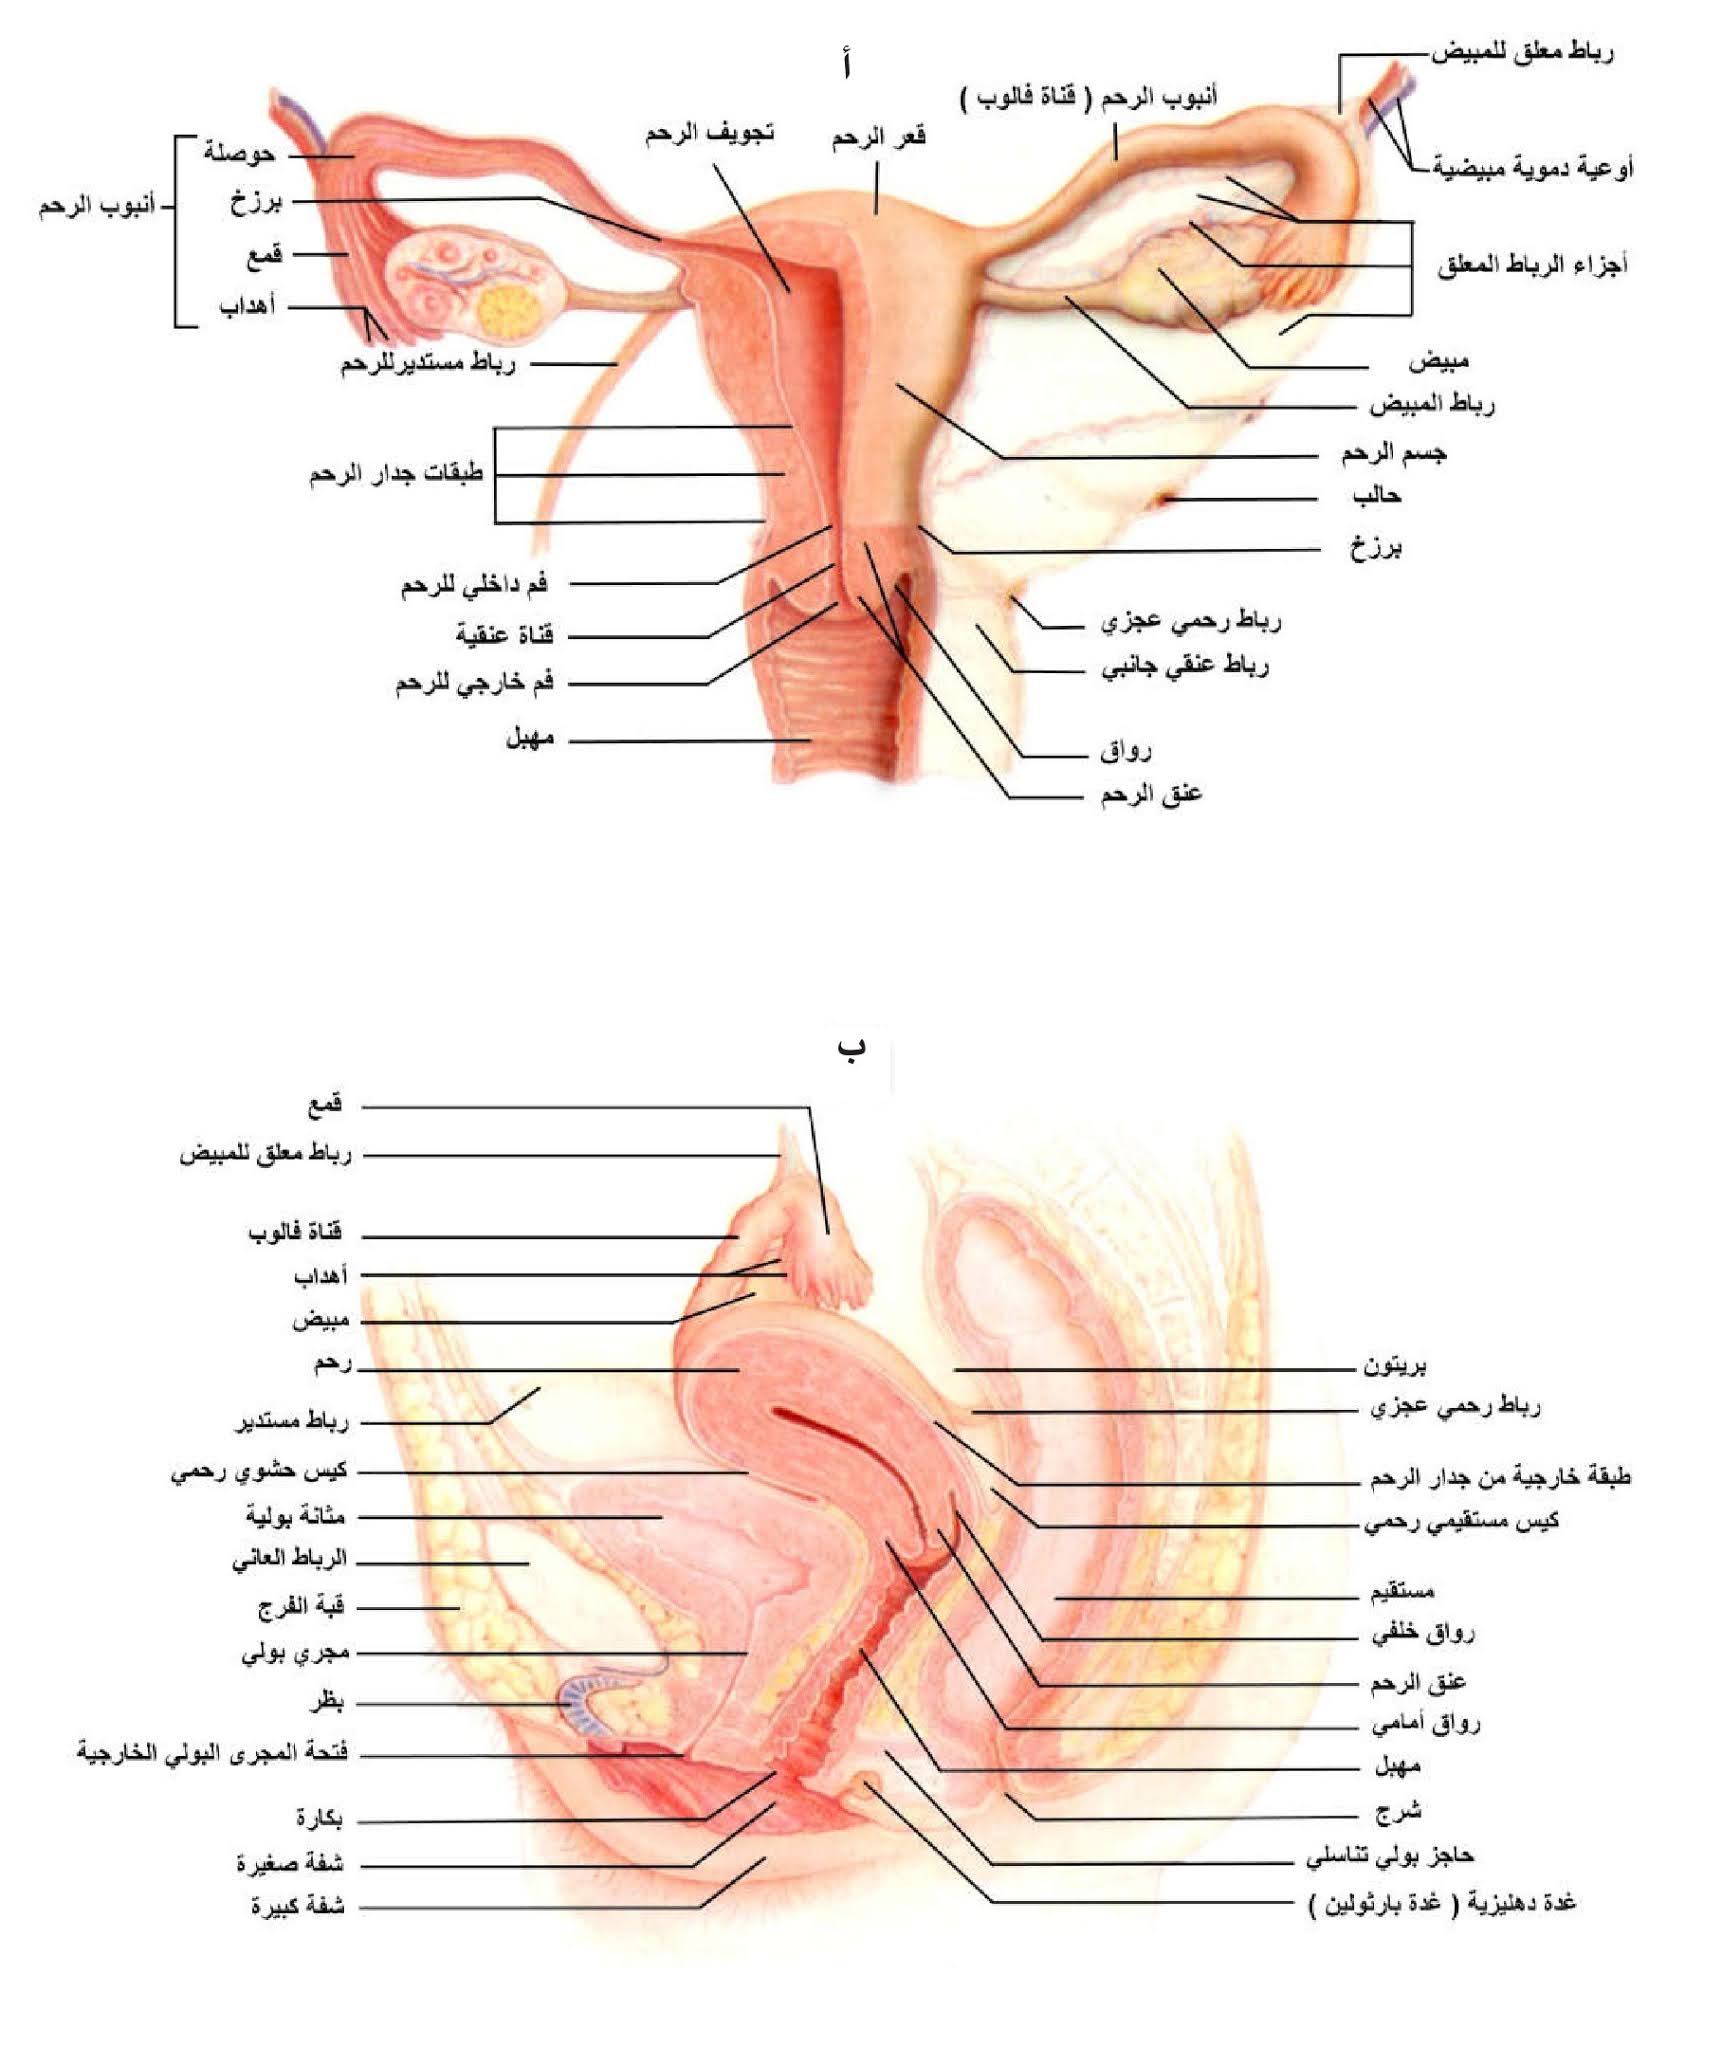 الشكل 22 - 10: أ) تركيب الجهاز التناسلي الأنثوي، ب) مقطع طولي في جسم أنثى يبين تركيب الجهاز التناسلي في موقعه.